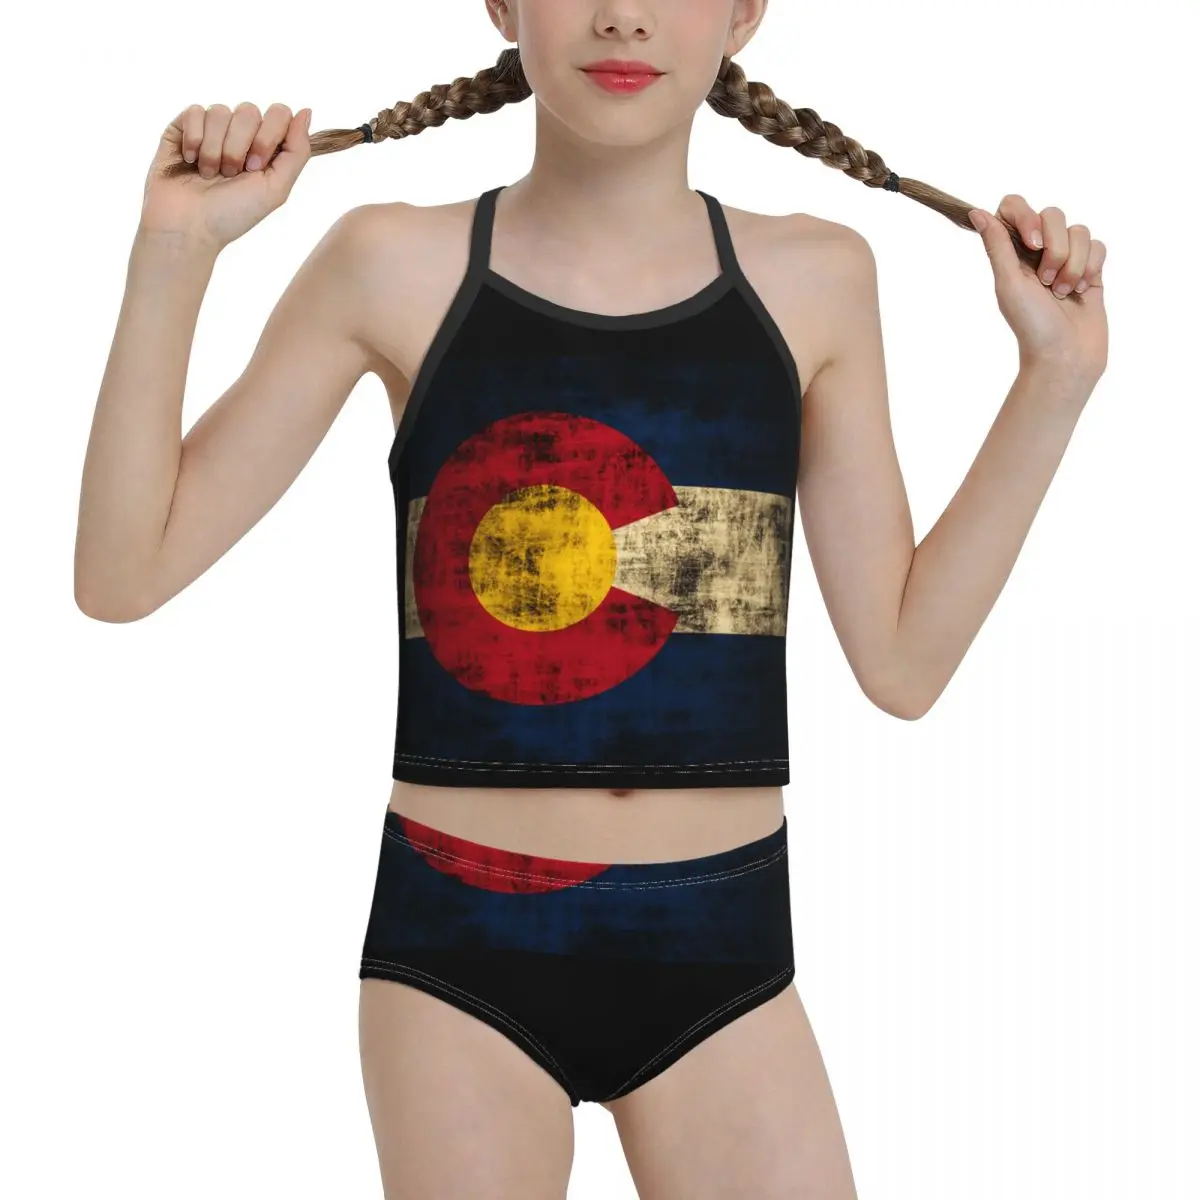 

2021 гордый женский купальник-бикини, неполная средняя школа с принтом для девочек в винтажном стиле гранж состояние флаг Колорадо бикини опт...